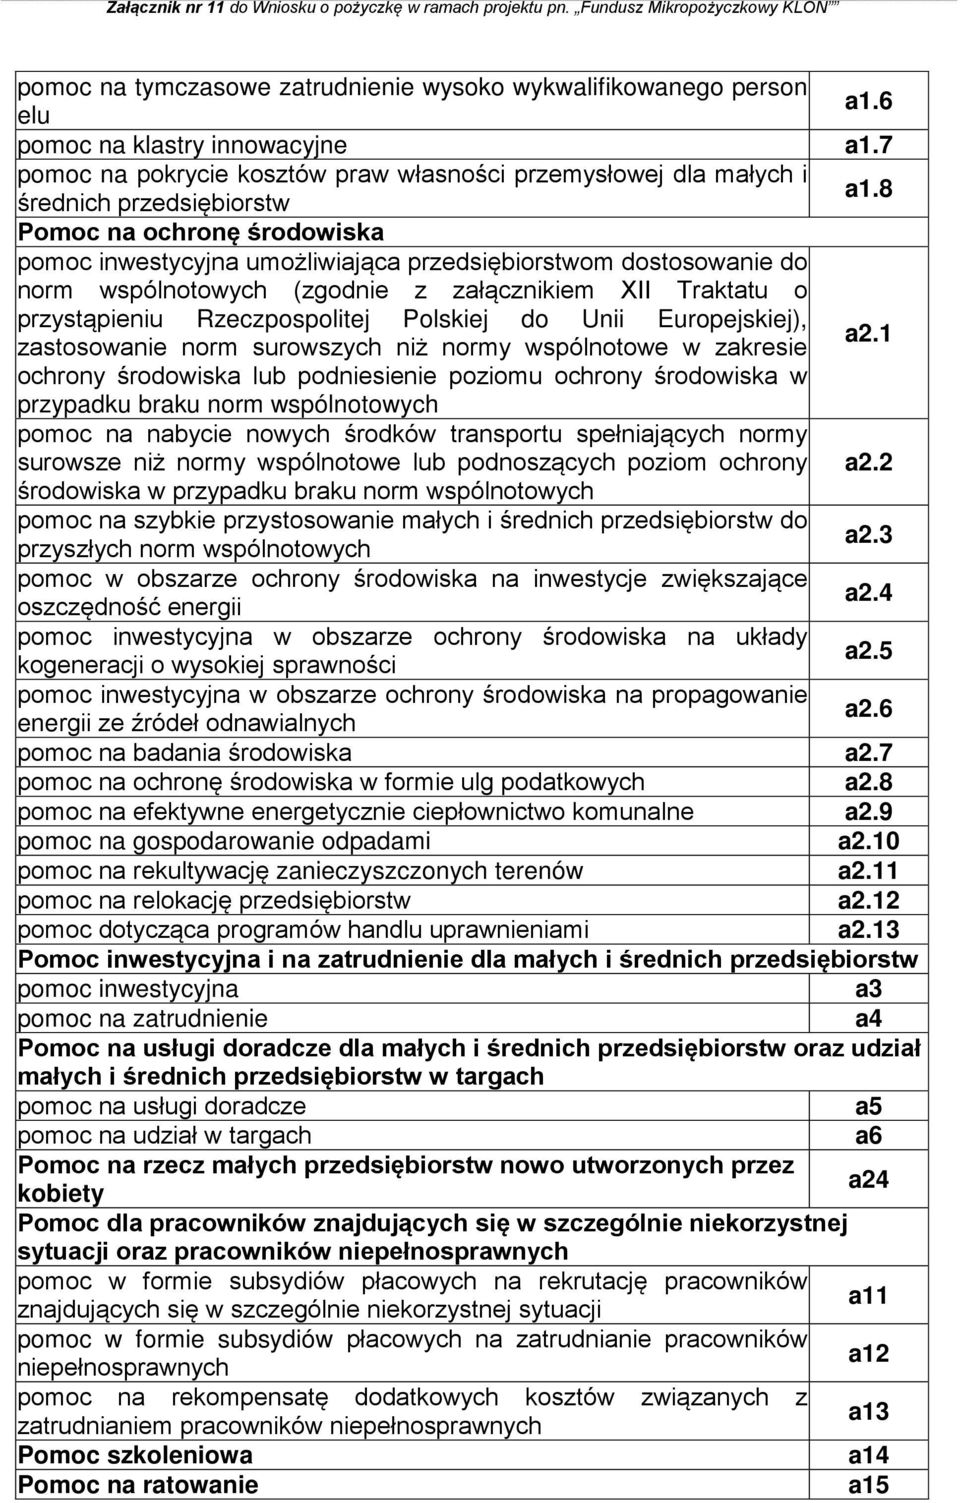 8 Pomoc na ochronę środowiska pomoc inwestycyjna umożliwiająca przedsiębiorstwom dostosowanie do norm wspólnotowych (zgodnie z załącznikiem XII Traktatu o przystąpieniu Rzeczpospolitej Polskiej do